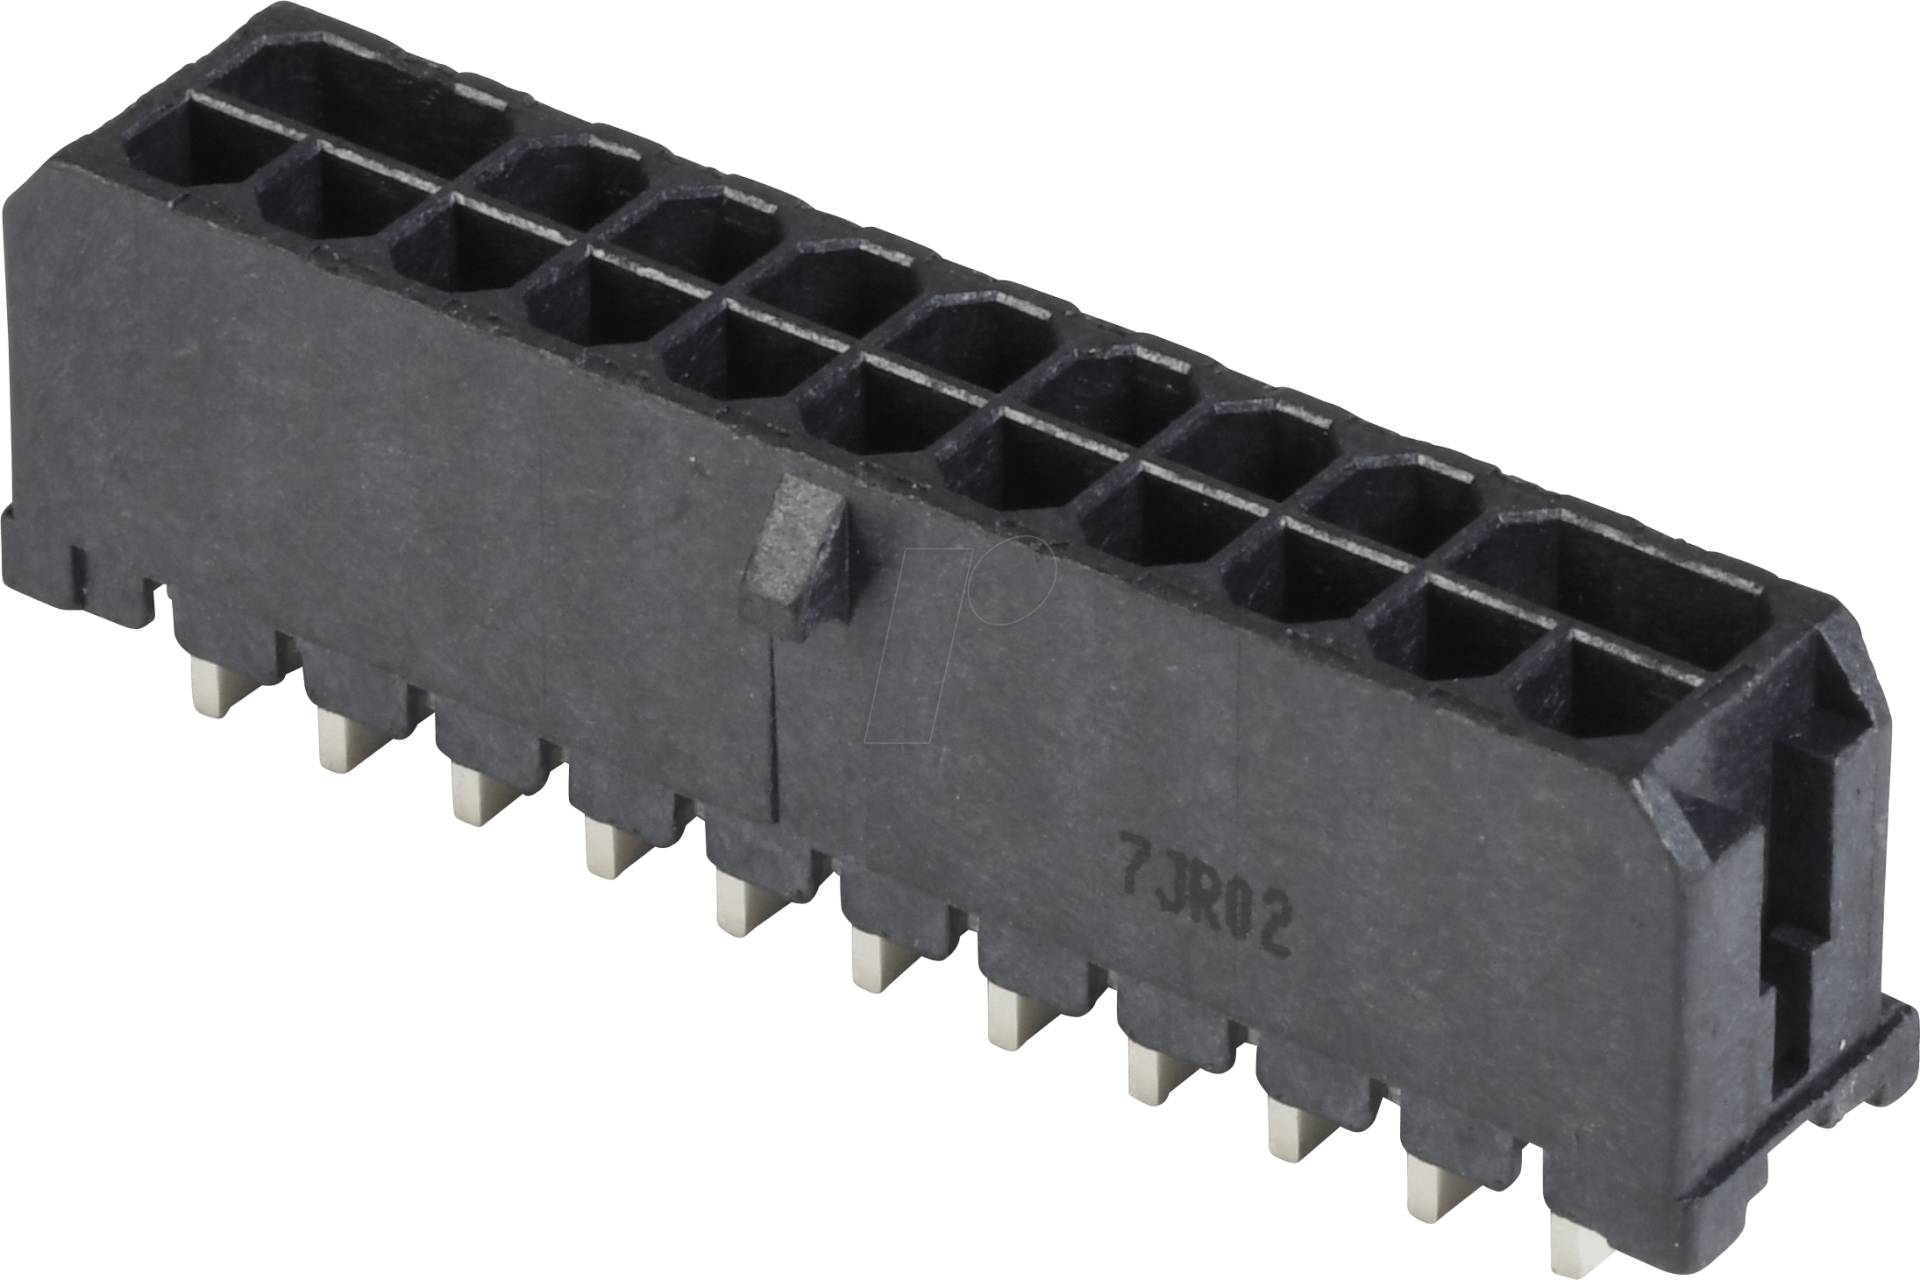 MH 2X11 THT90 - Micro-Hi Stiftleiste 2x11 polig 90° THT von BELLWETHER